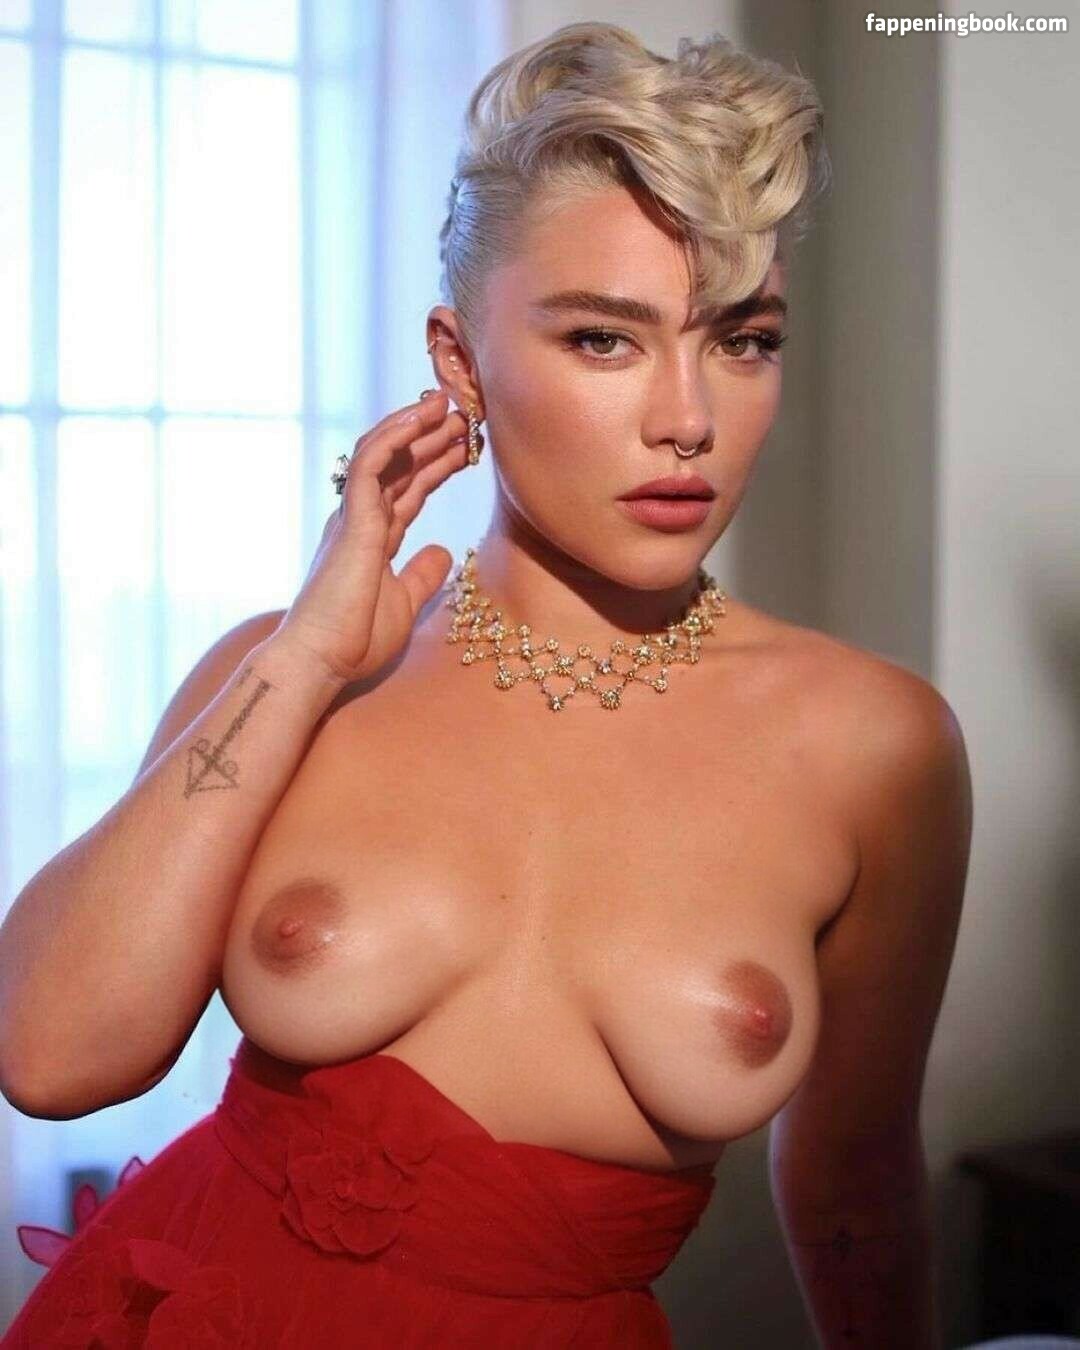 Florence Pugh Deepfake Nude